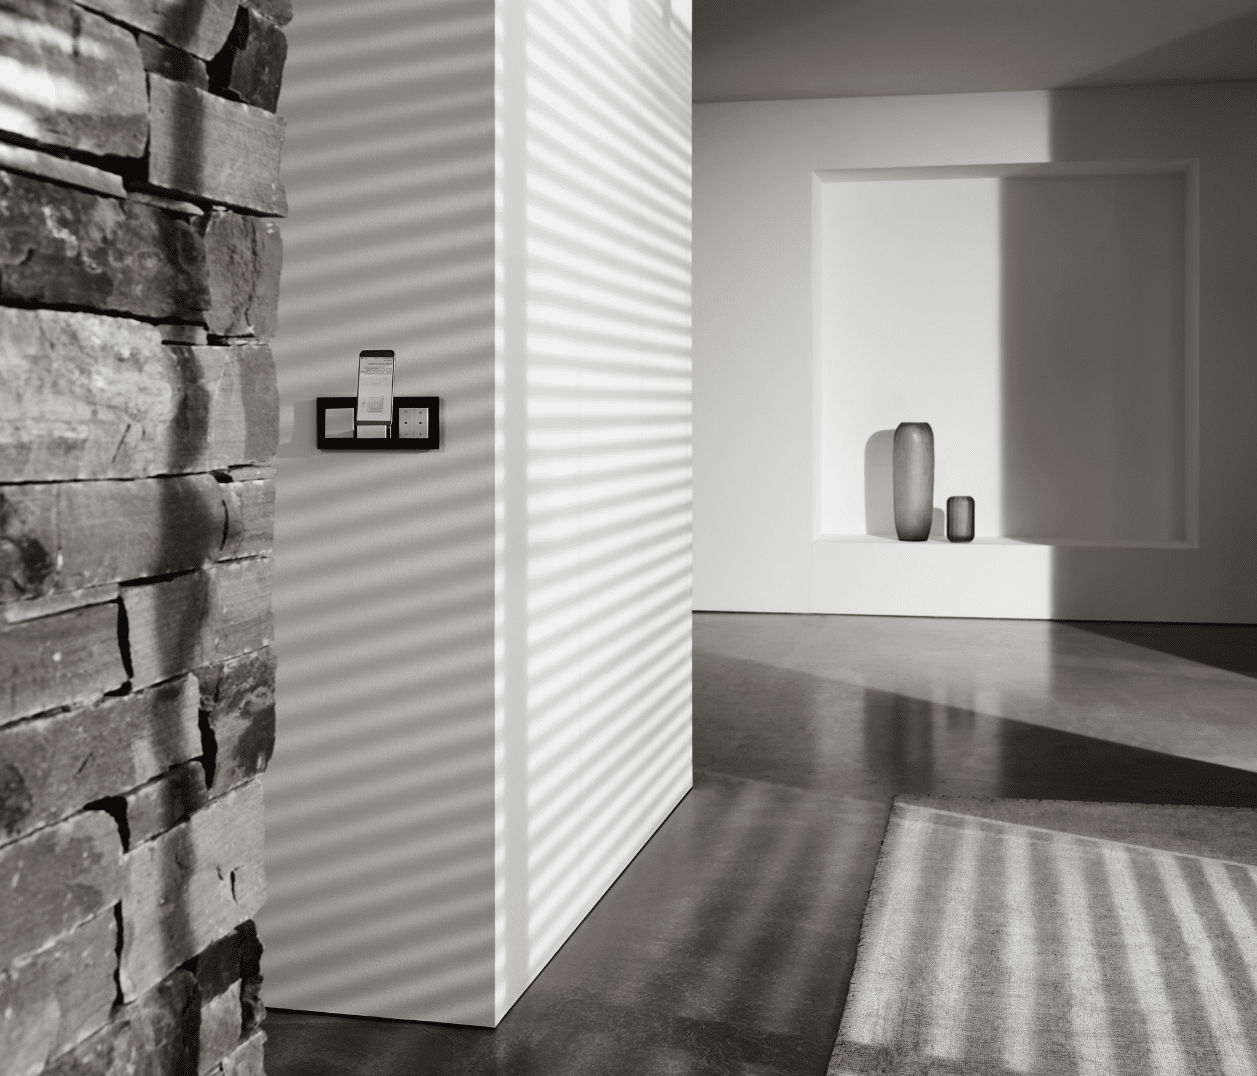 Gira zeigt ein Wohnzimmer mit praktischer Smart Home Bedieneinheit, bestehend aus Schaltern und einer Docking Station für das Handy.